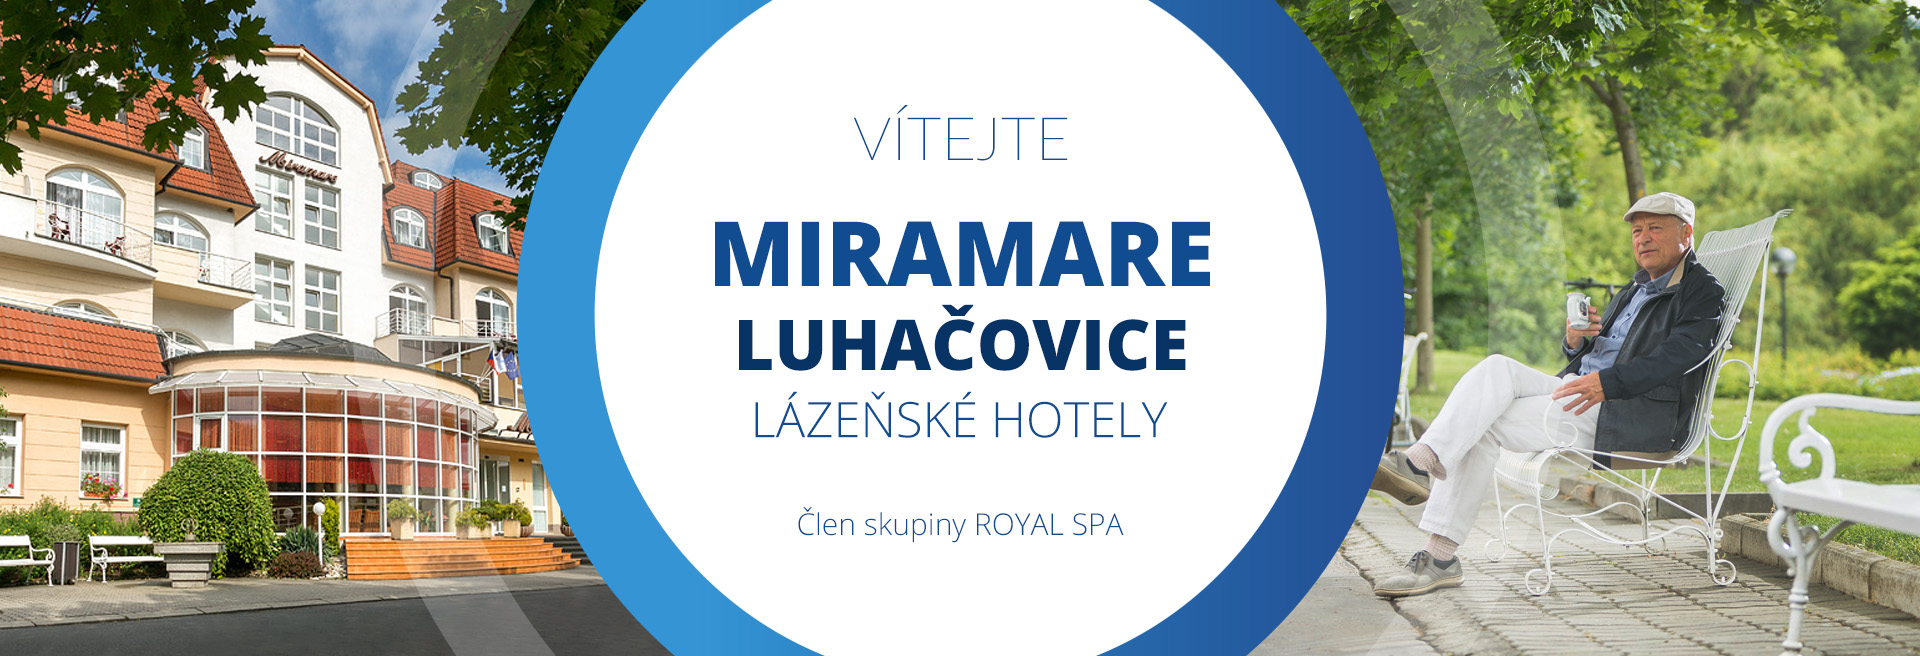 Ubytování a hotely - lázně MIRAMARE Luhačovice